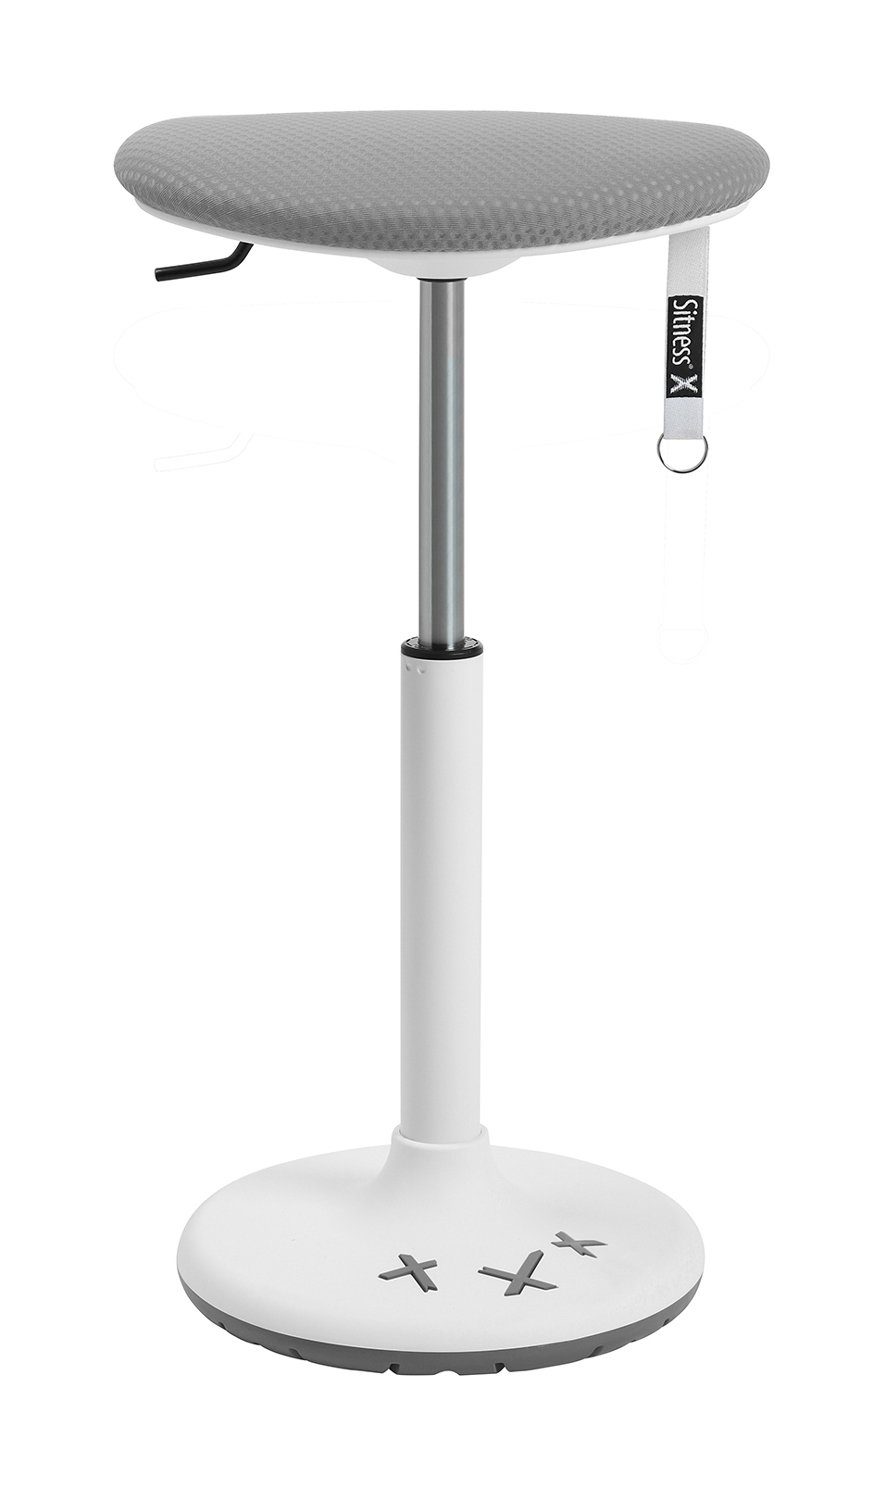 TOPSTAR Sitzhocker SITNESS X STOOL, H 77 cm, Grau, Weiß, Kunststoff, mit Tragegriff, höhenverstellbar